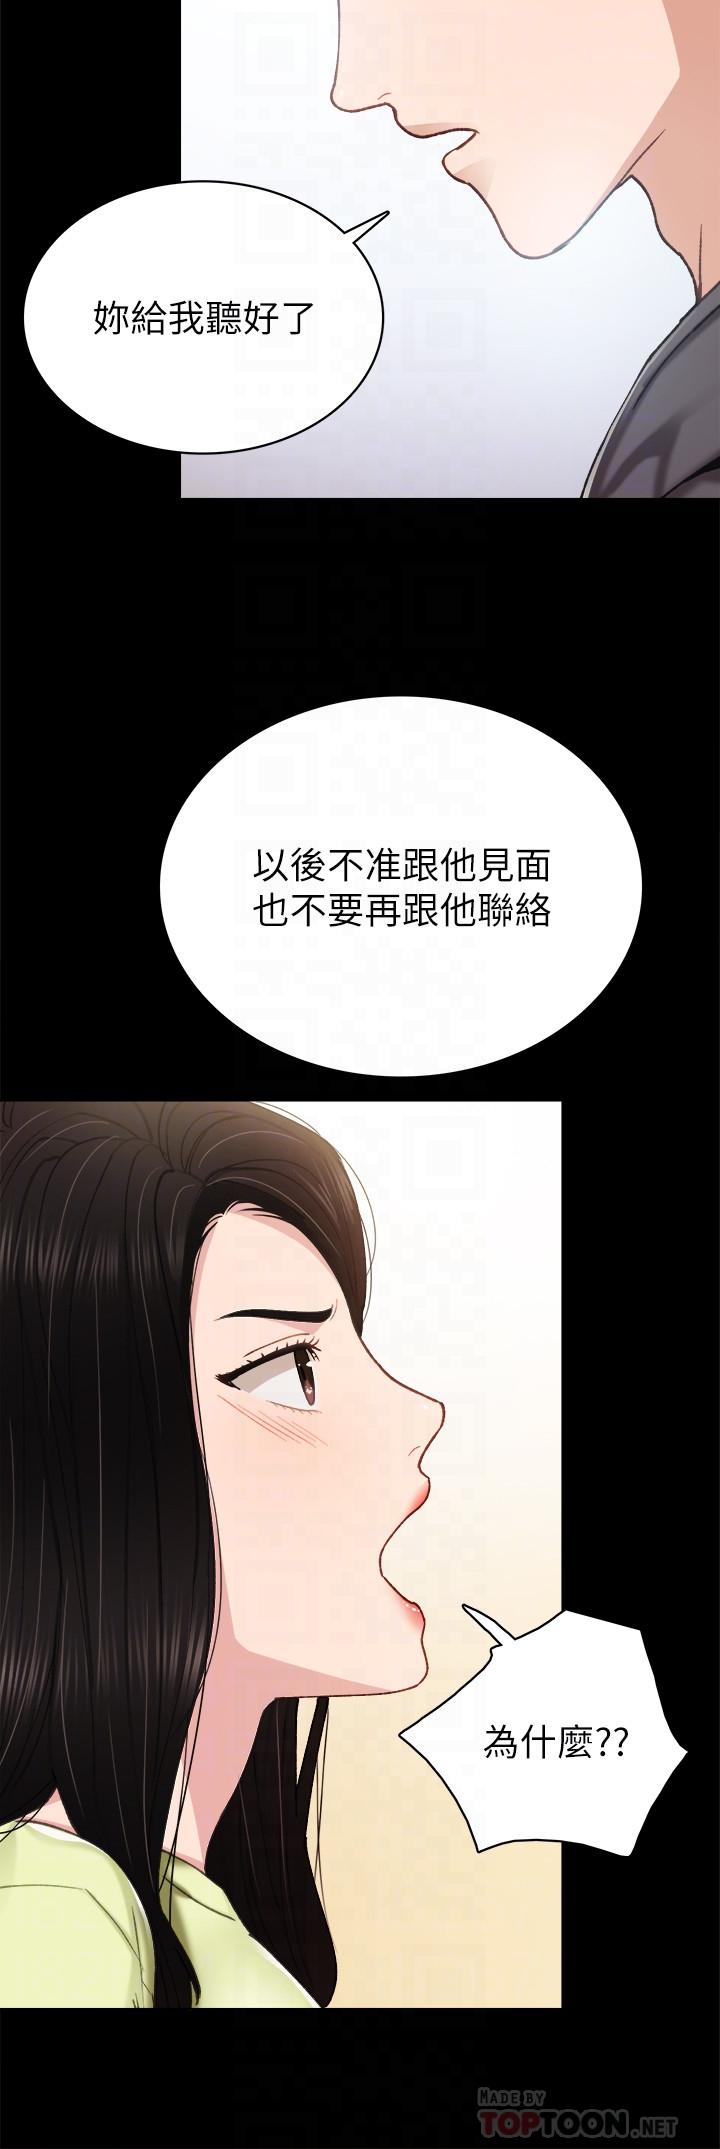 《实习老师》漫画 第76话 - 失联许久的雅晴